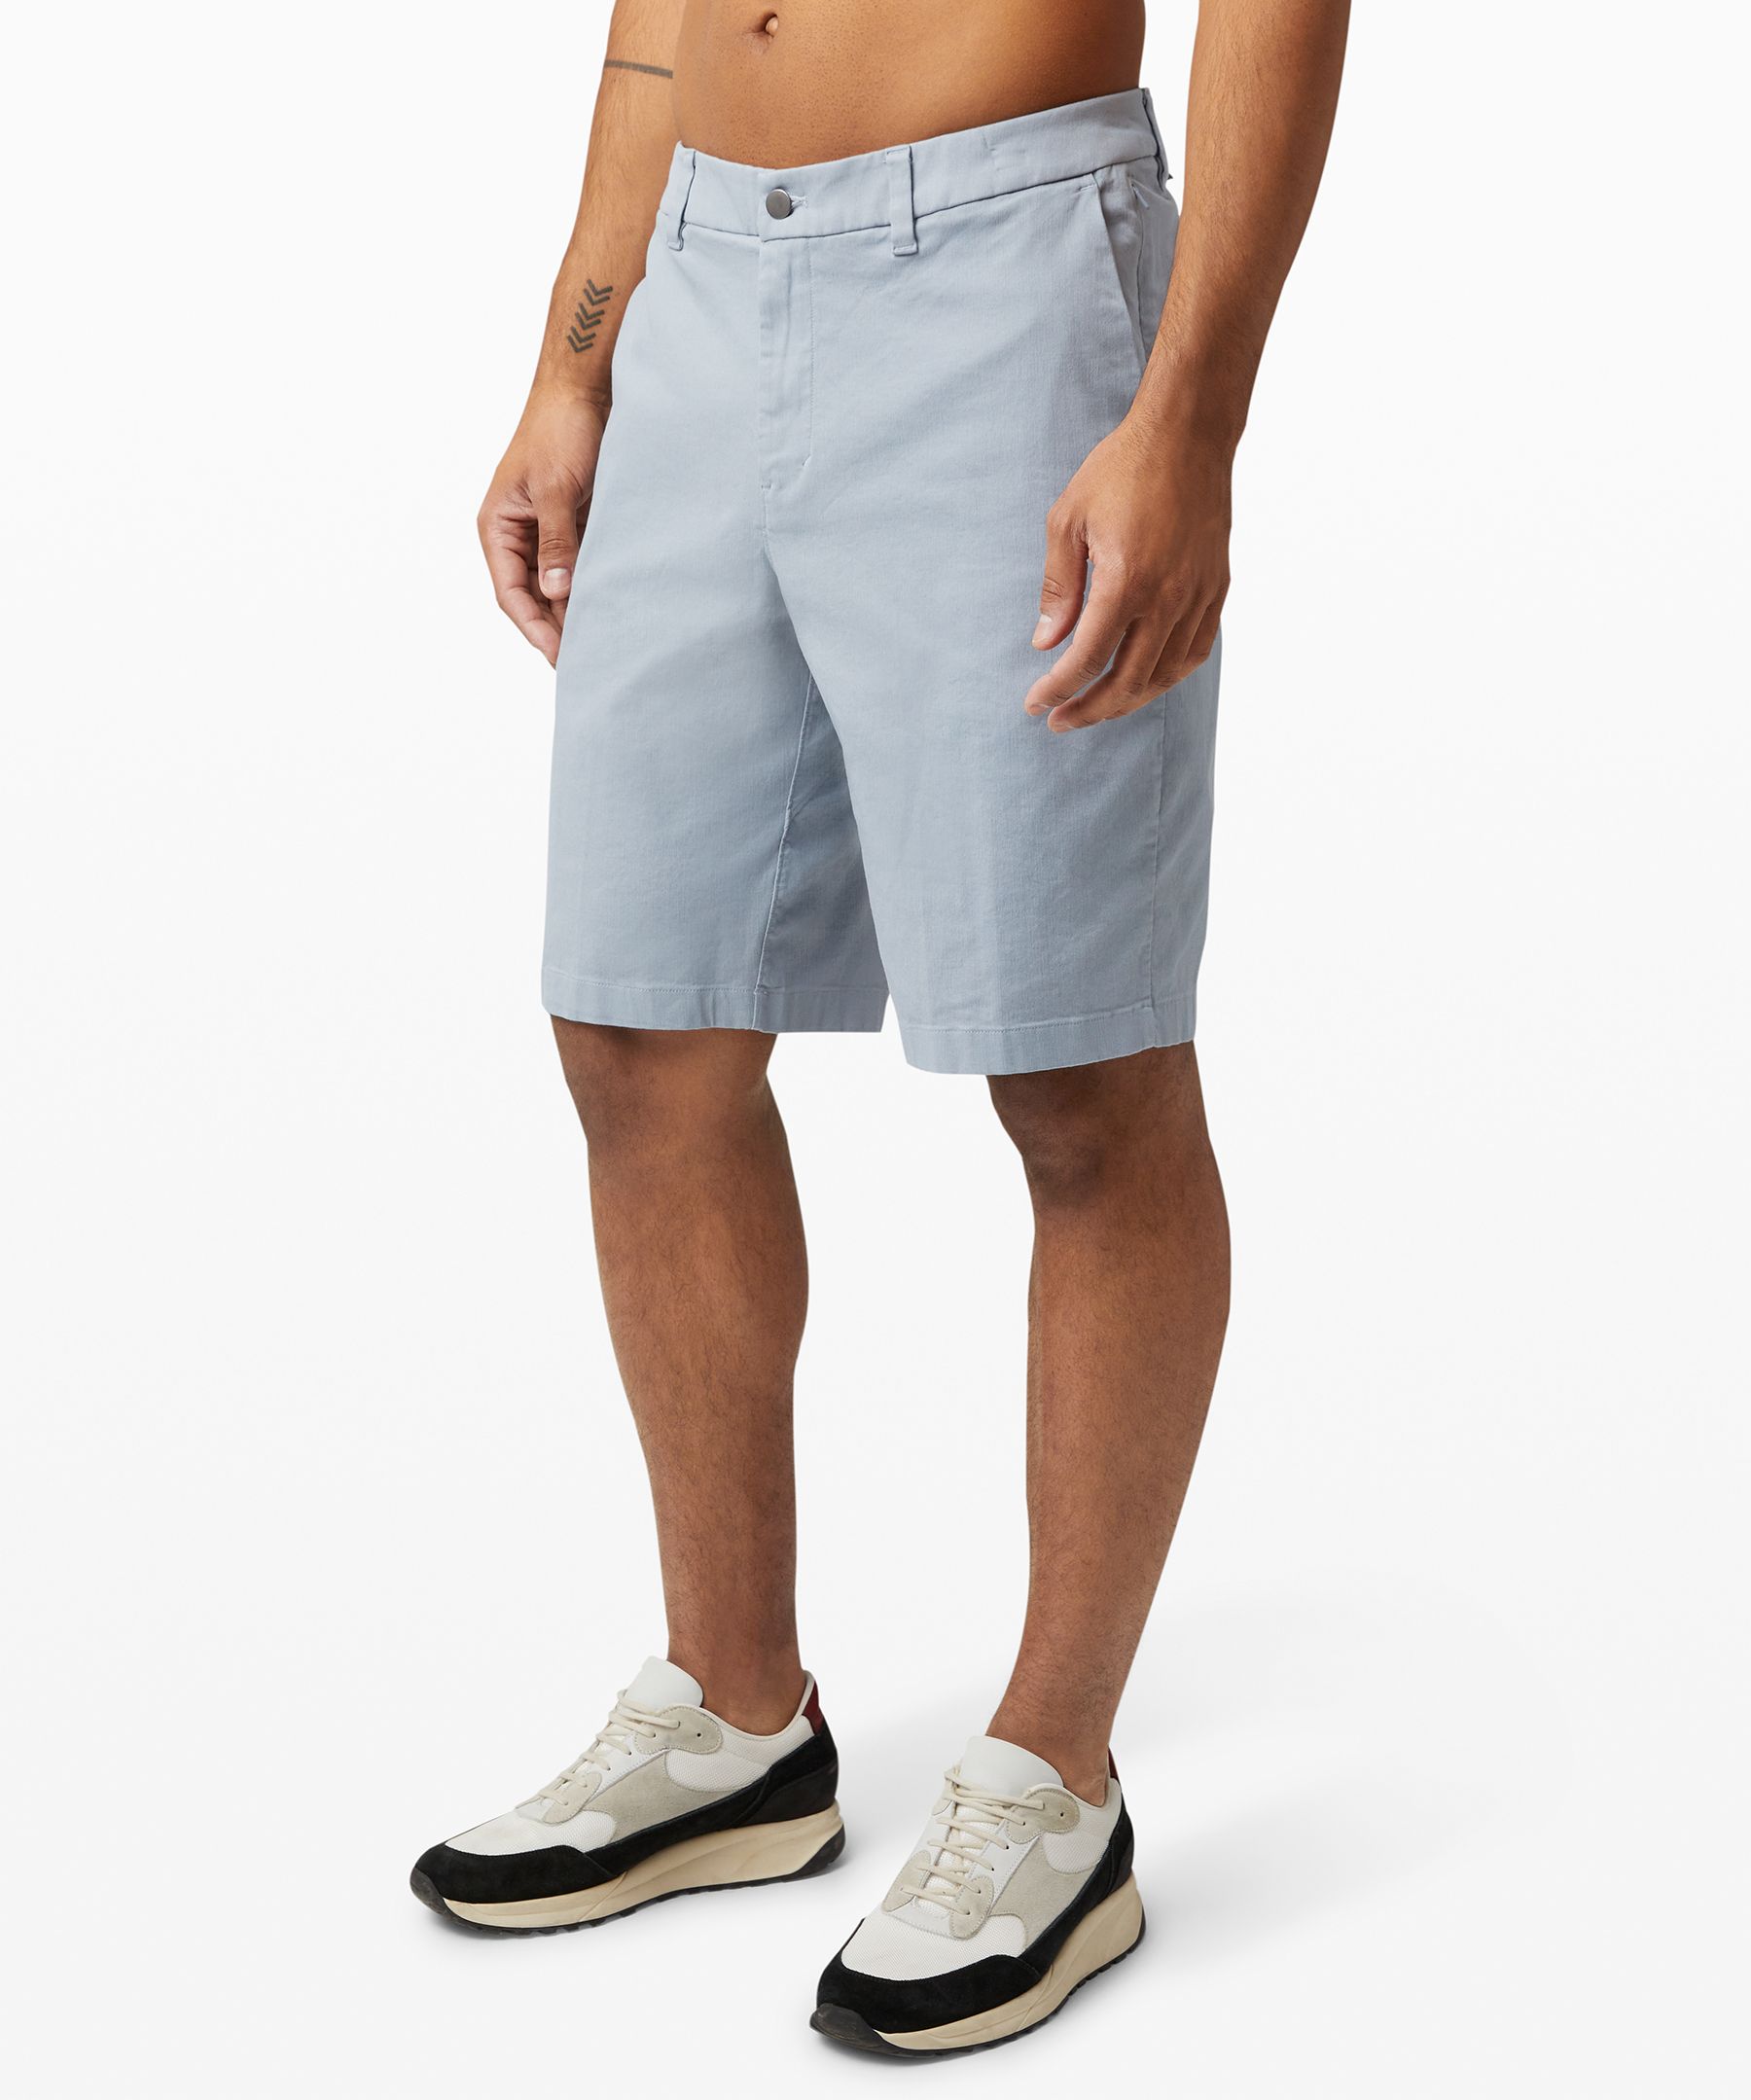 lululemon 11 shorts